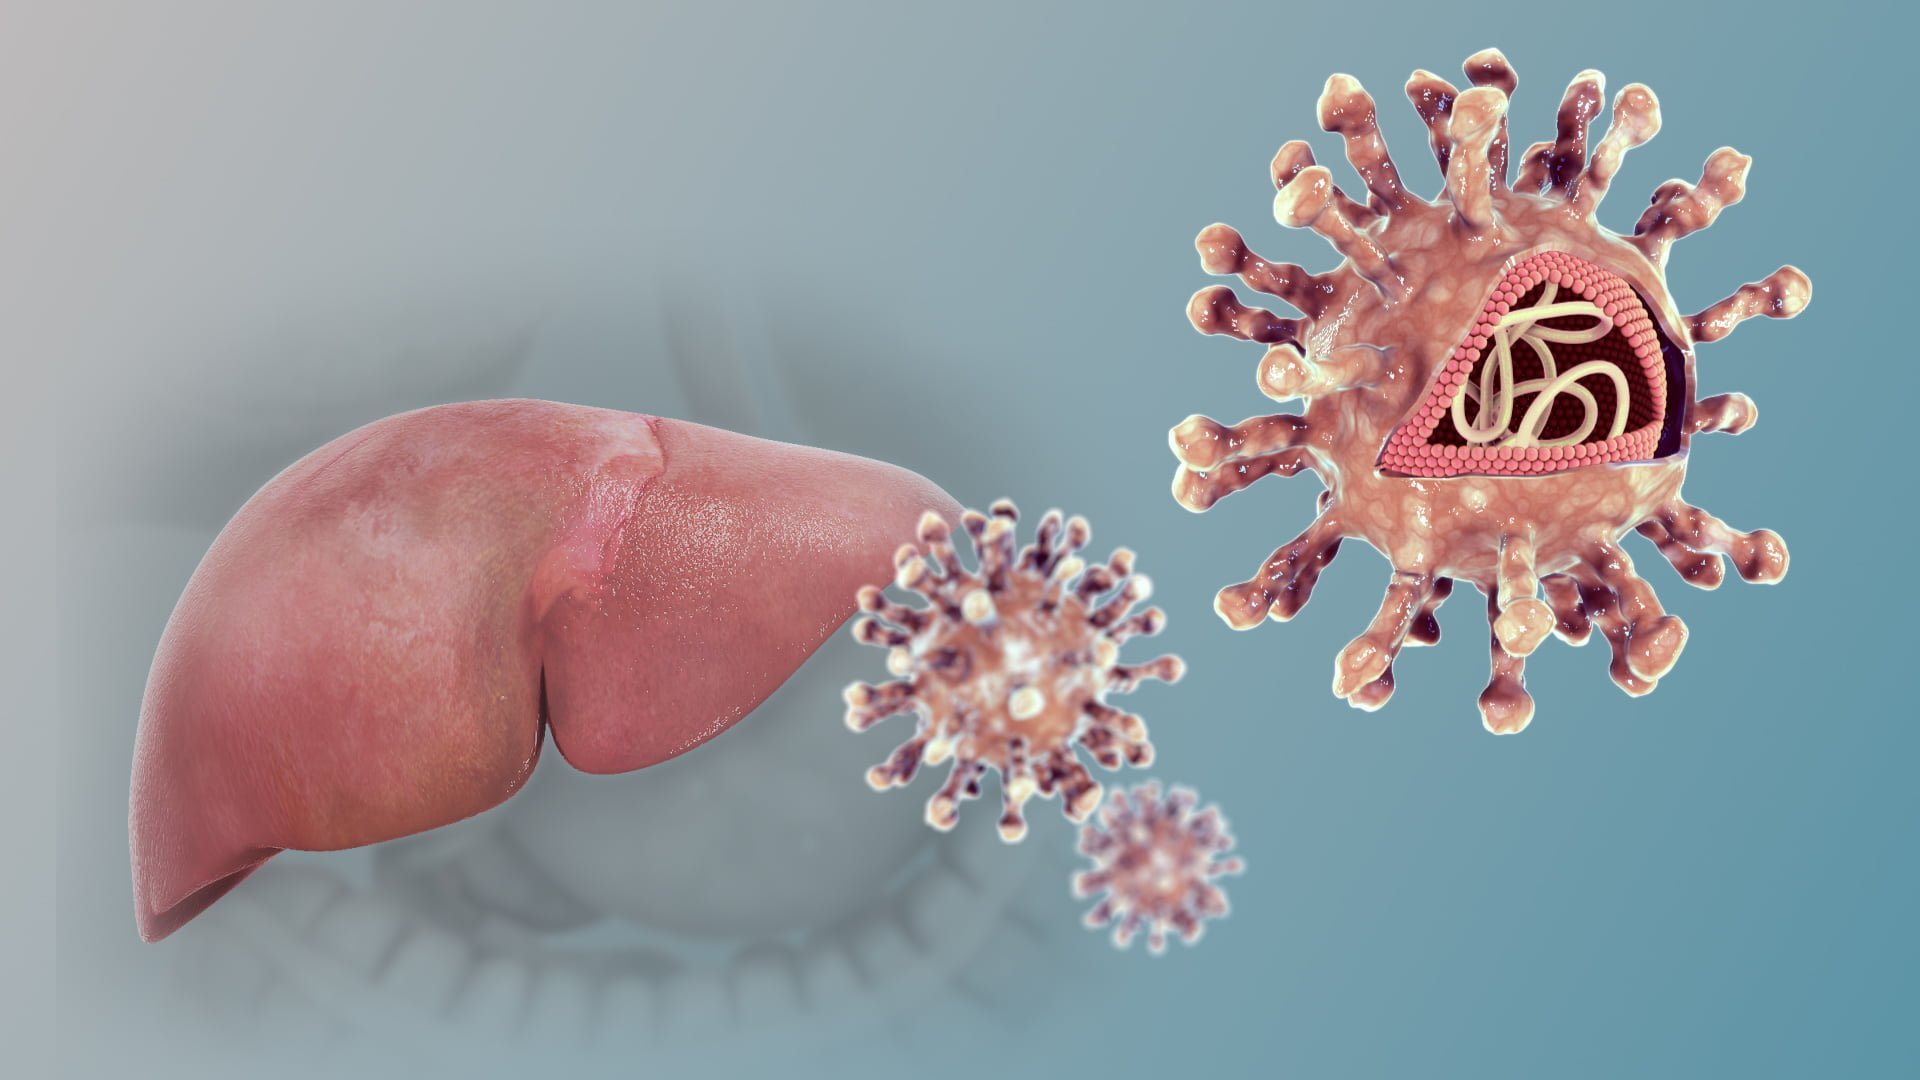 Hepatitis C جائزة نوبل لاكتشاف فيروس سي | أمل جديد يلوح في الأفق مجلة نقطة العلمية